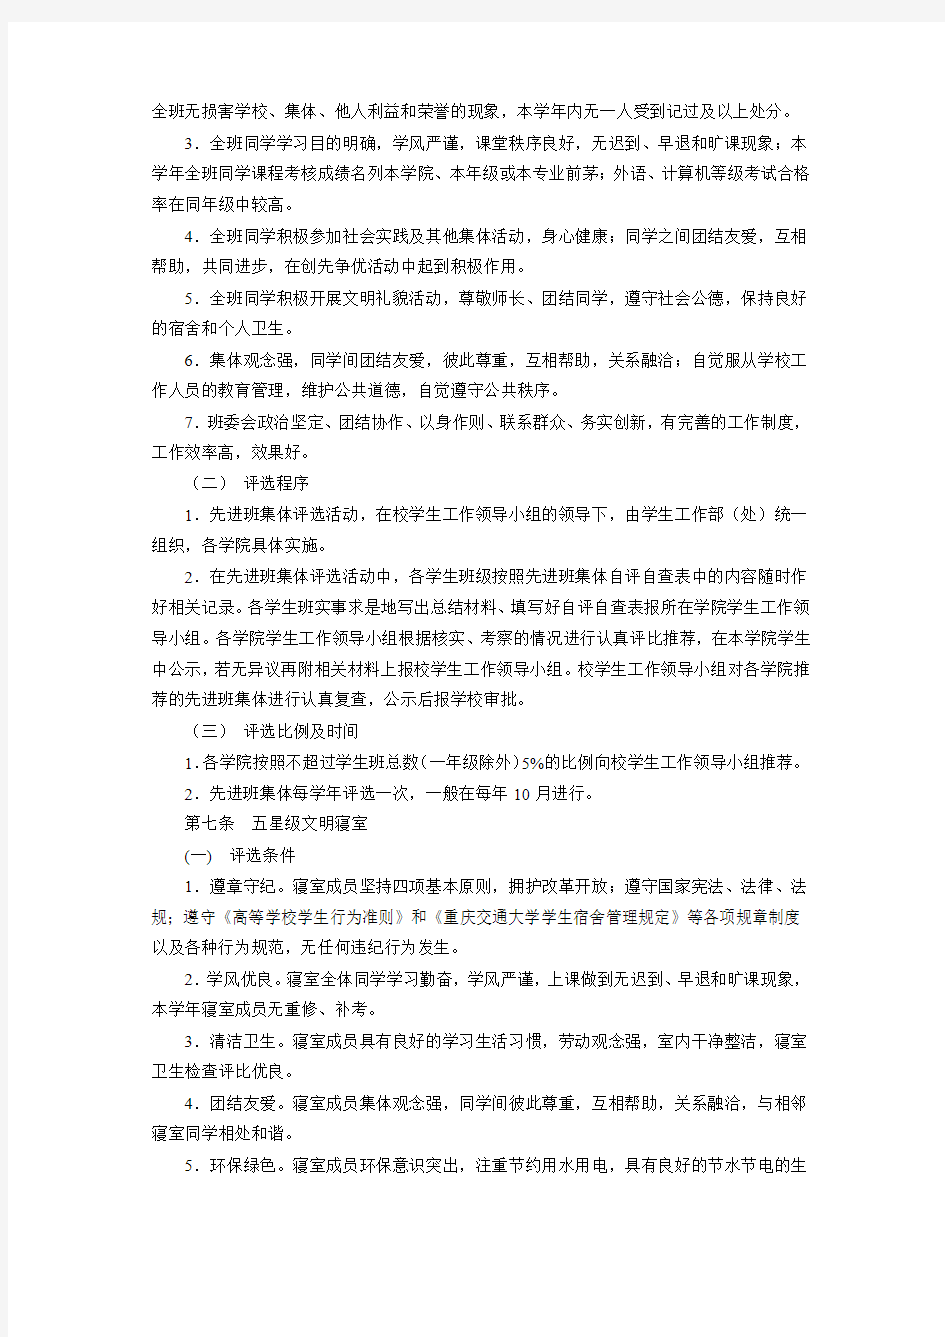 14【学生手册-奖励与惩处】重庆交通大学学生奖励办法(试行)